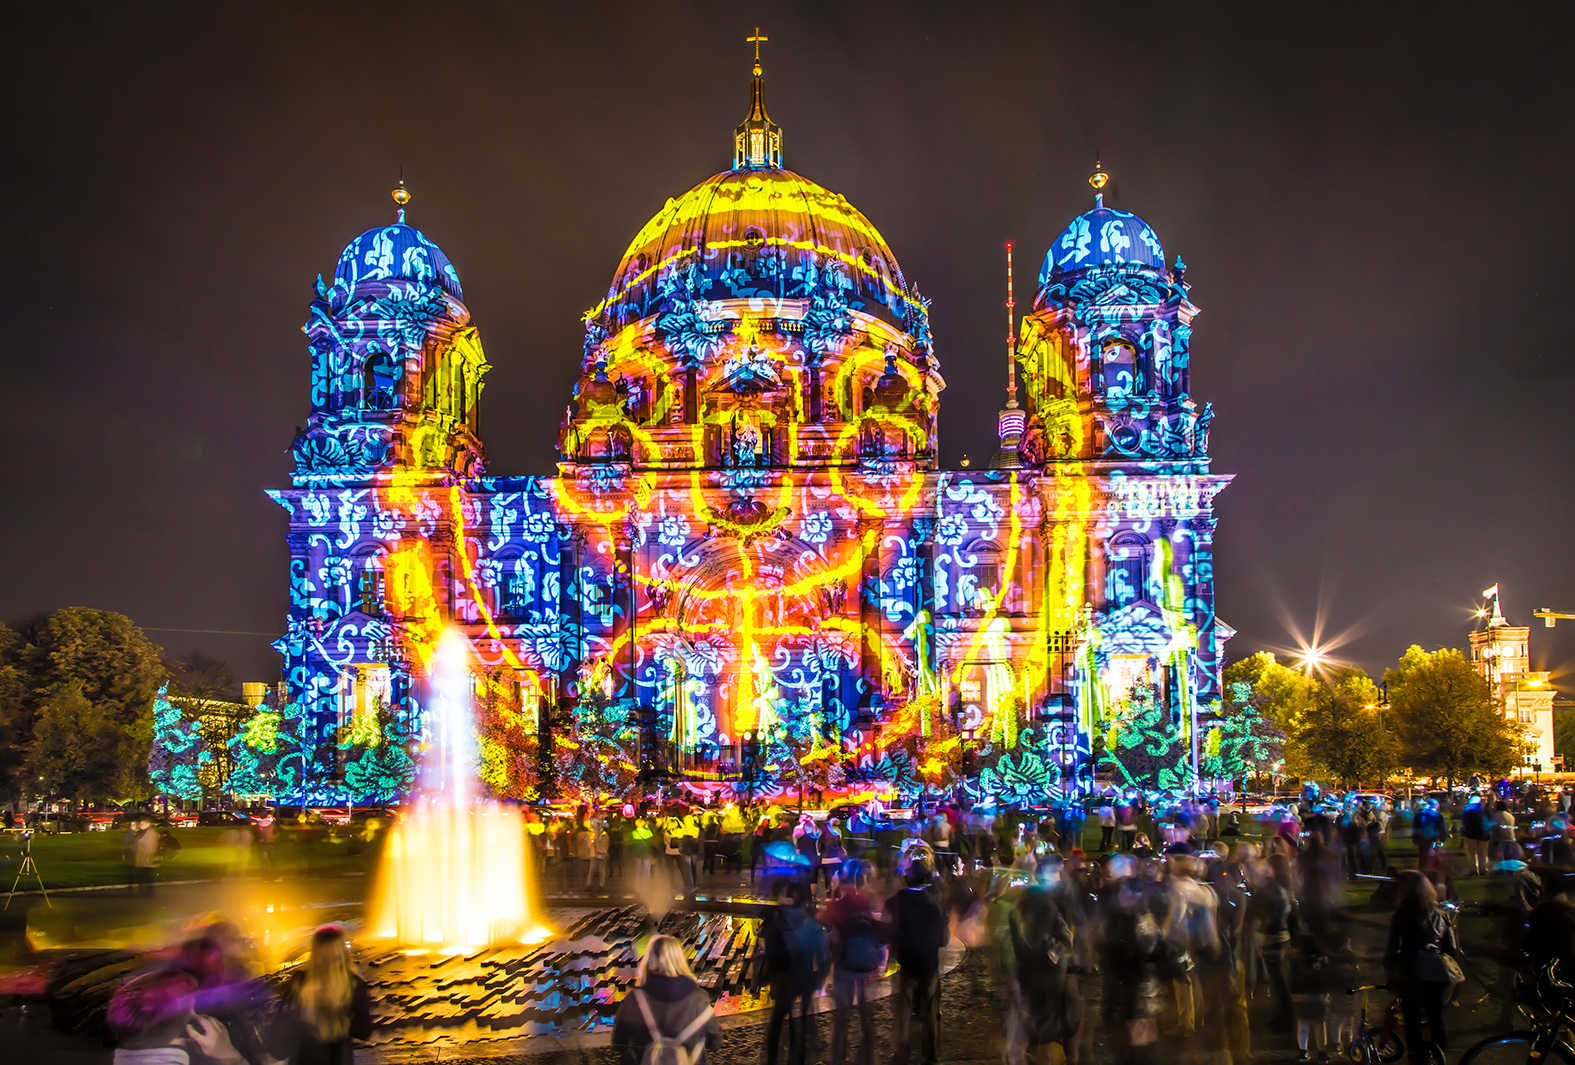 Festival of lights berlin 2020